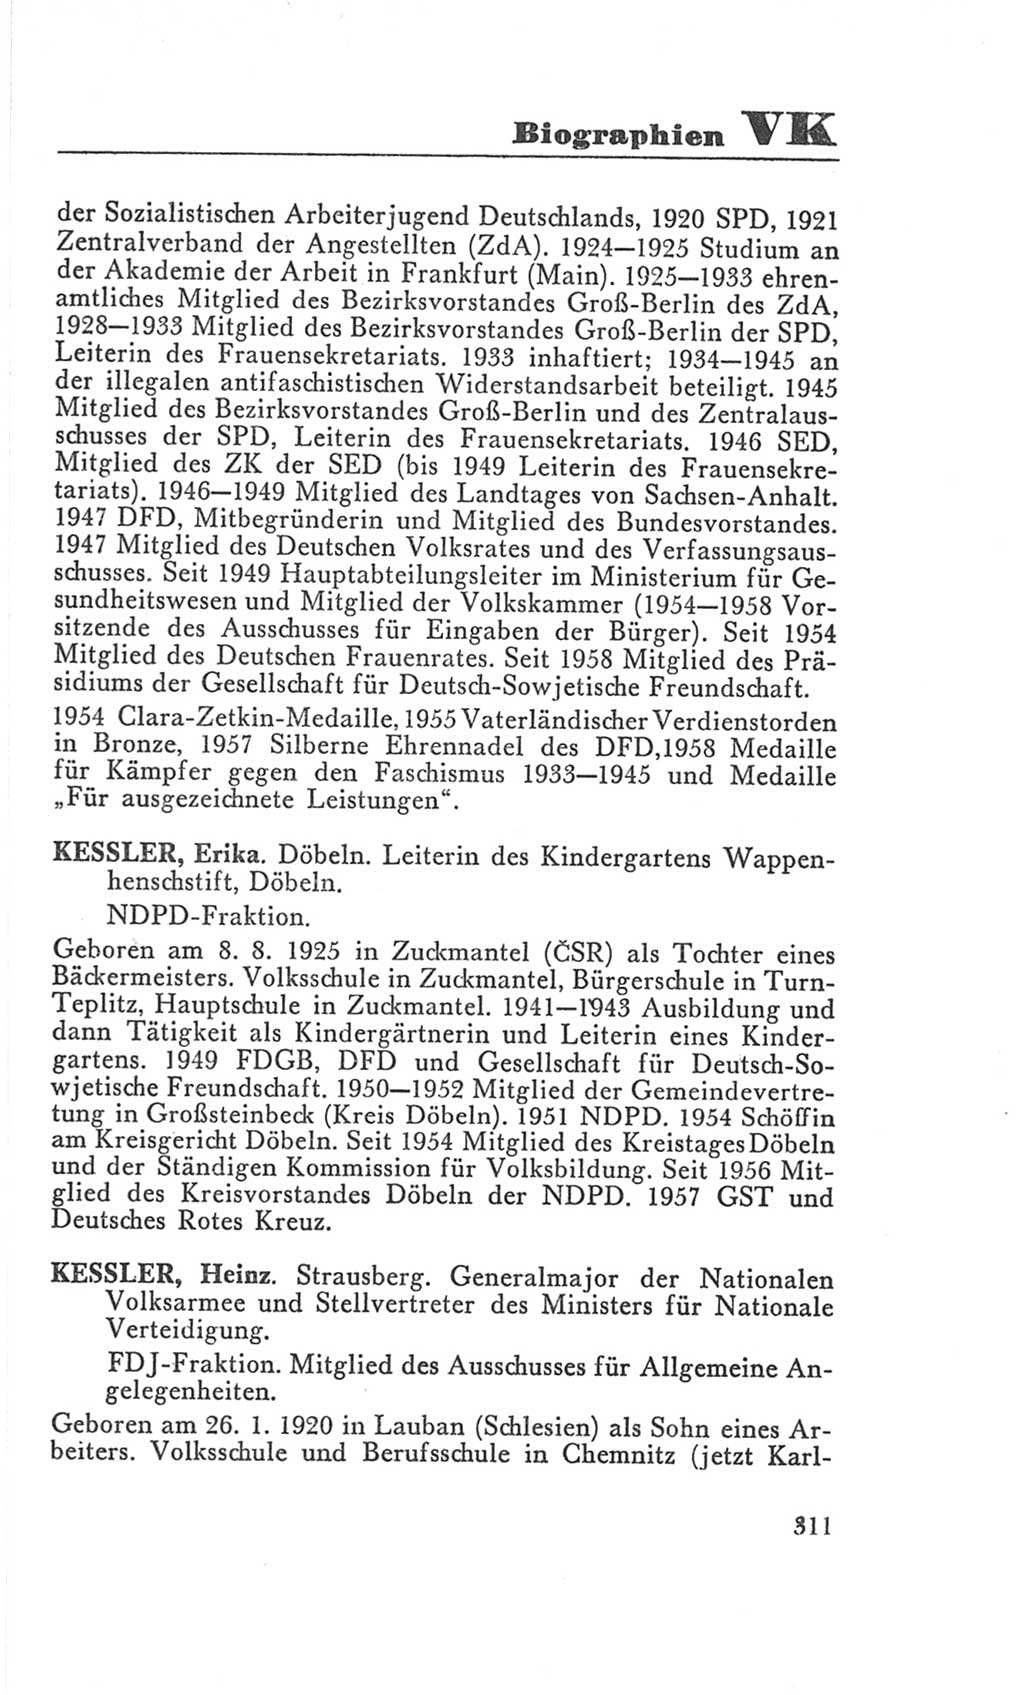 Handbuch der Volkskammer (VK) der Deutschen Demokratischen Republik (DDR), 3. Wahlperiode 1958-1963, Seite 311 (Hdb. VK. DDR 3. WP. 1958-1963, S. 311)